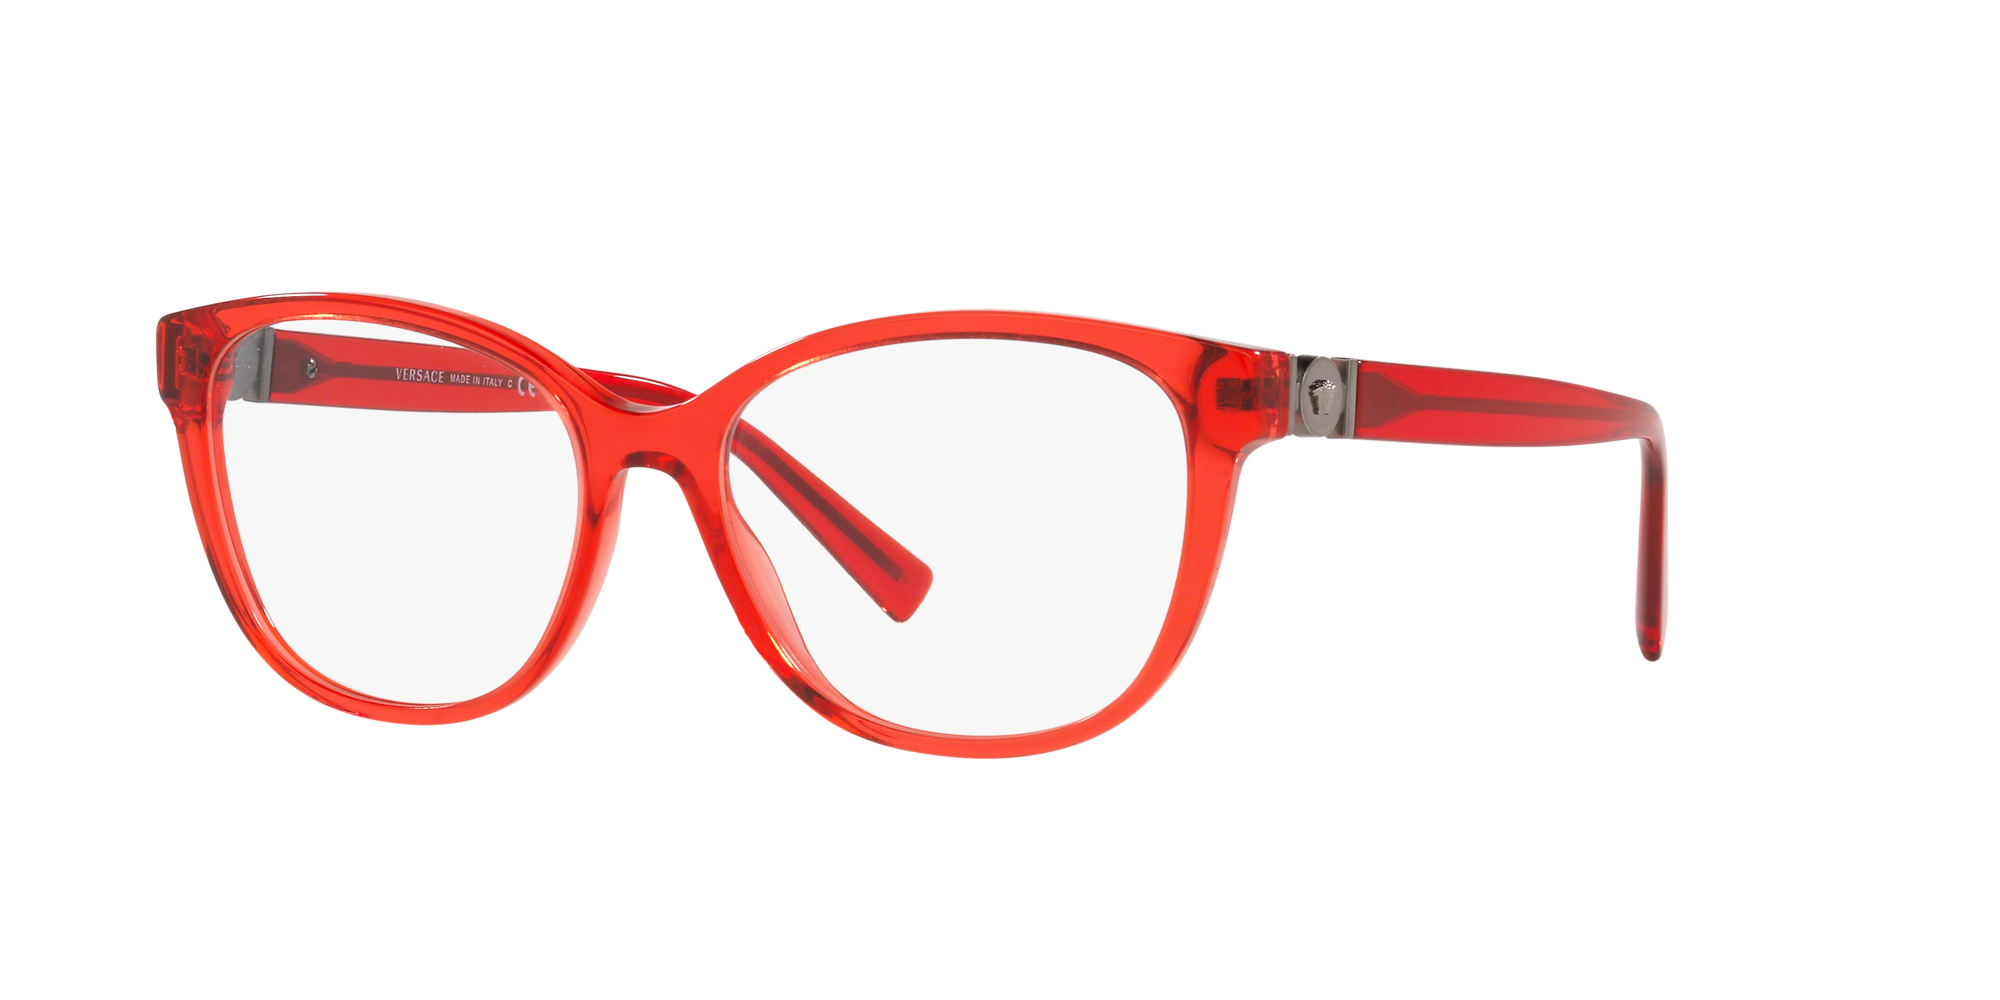 red versace eyeglasses